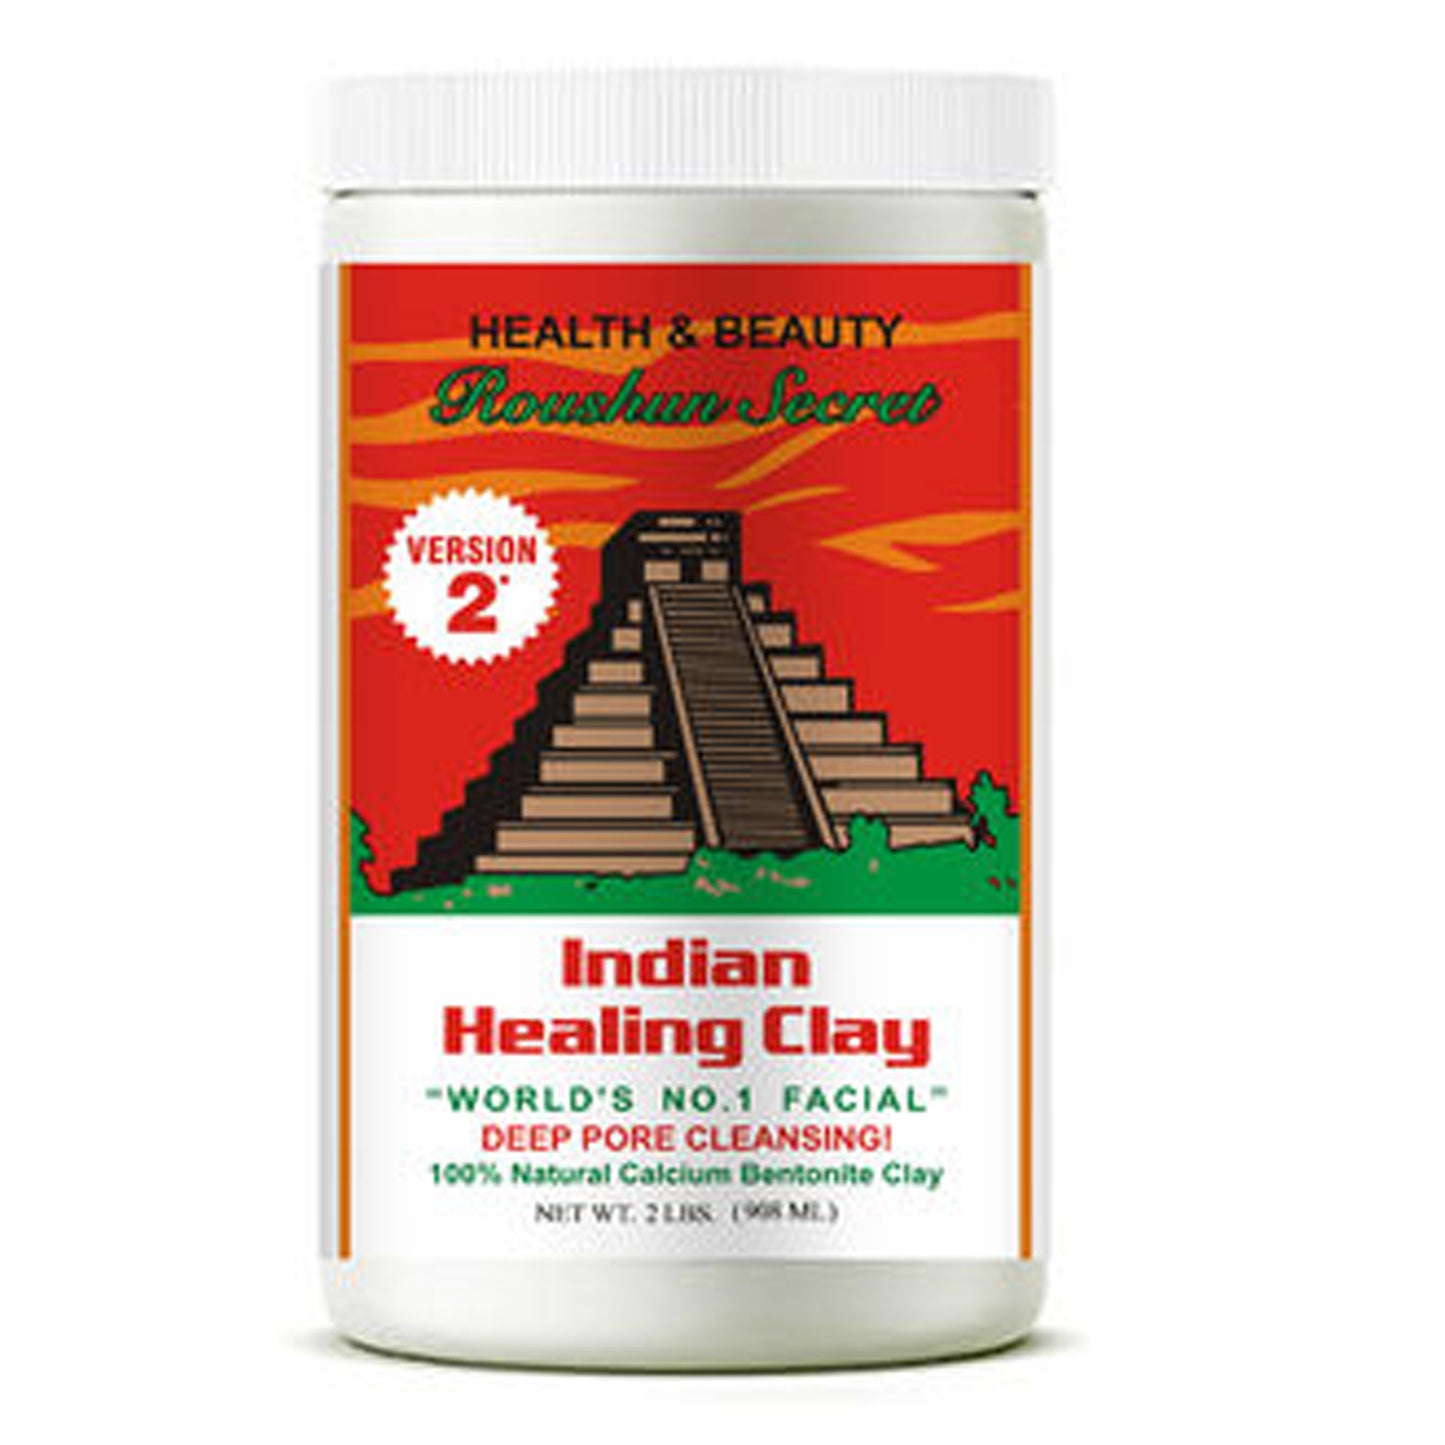 ROUSHUN SECRET - HEALTH & BEAUTY INDIAN HEALING CLAY - 908ML